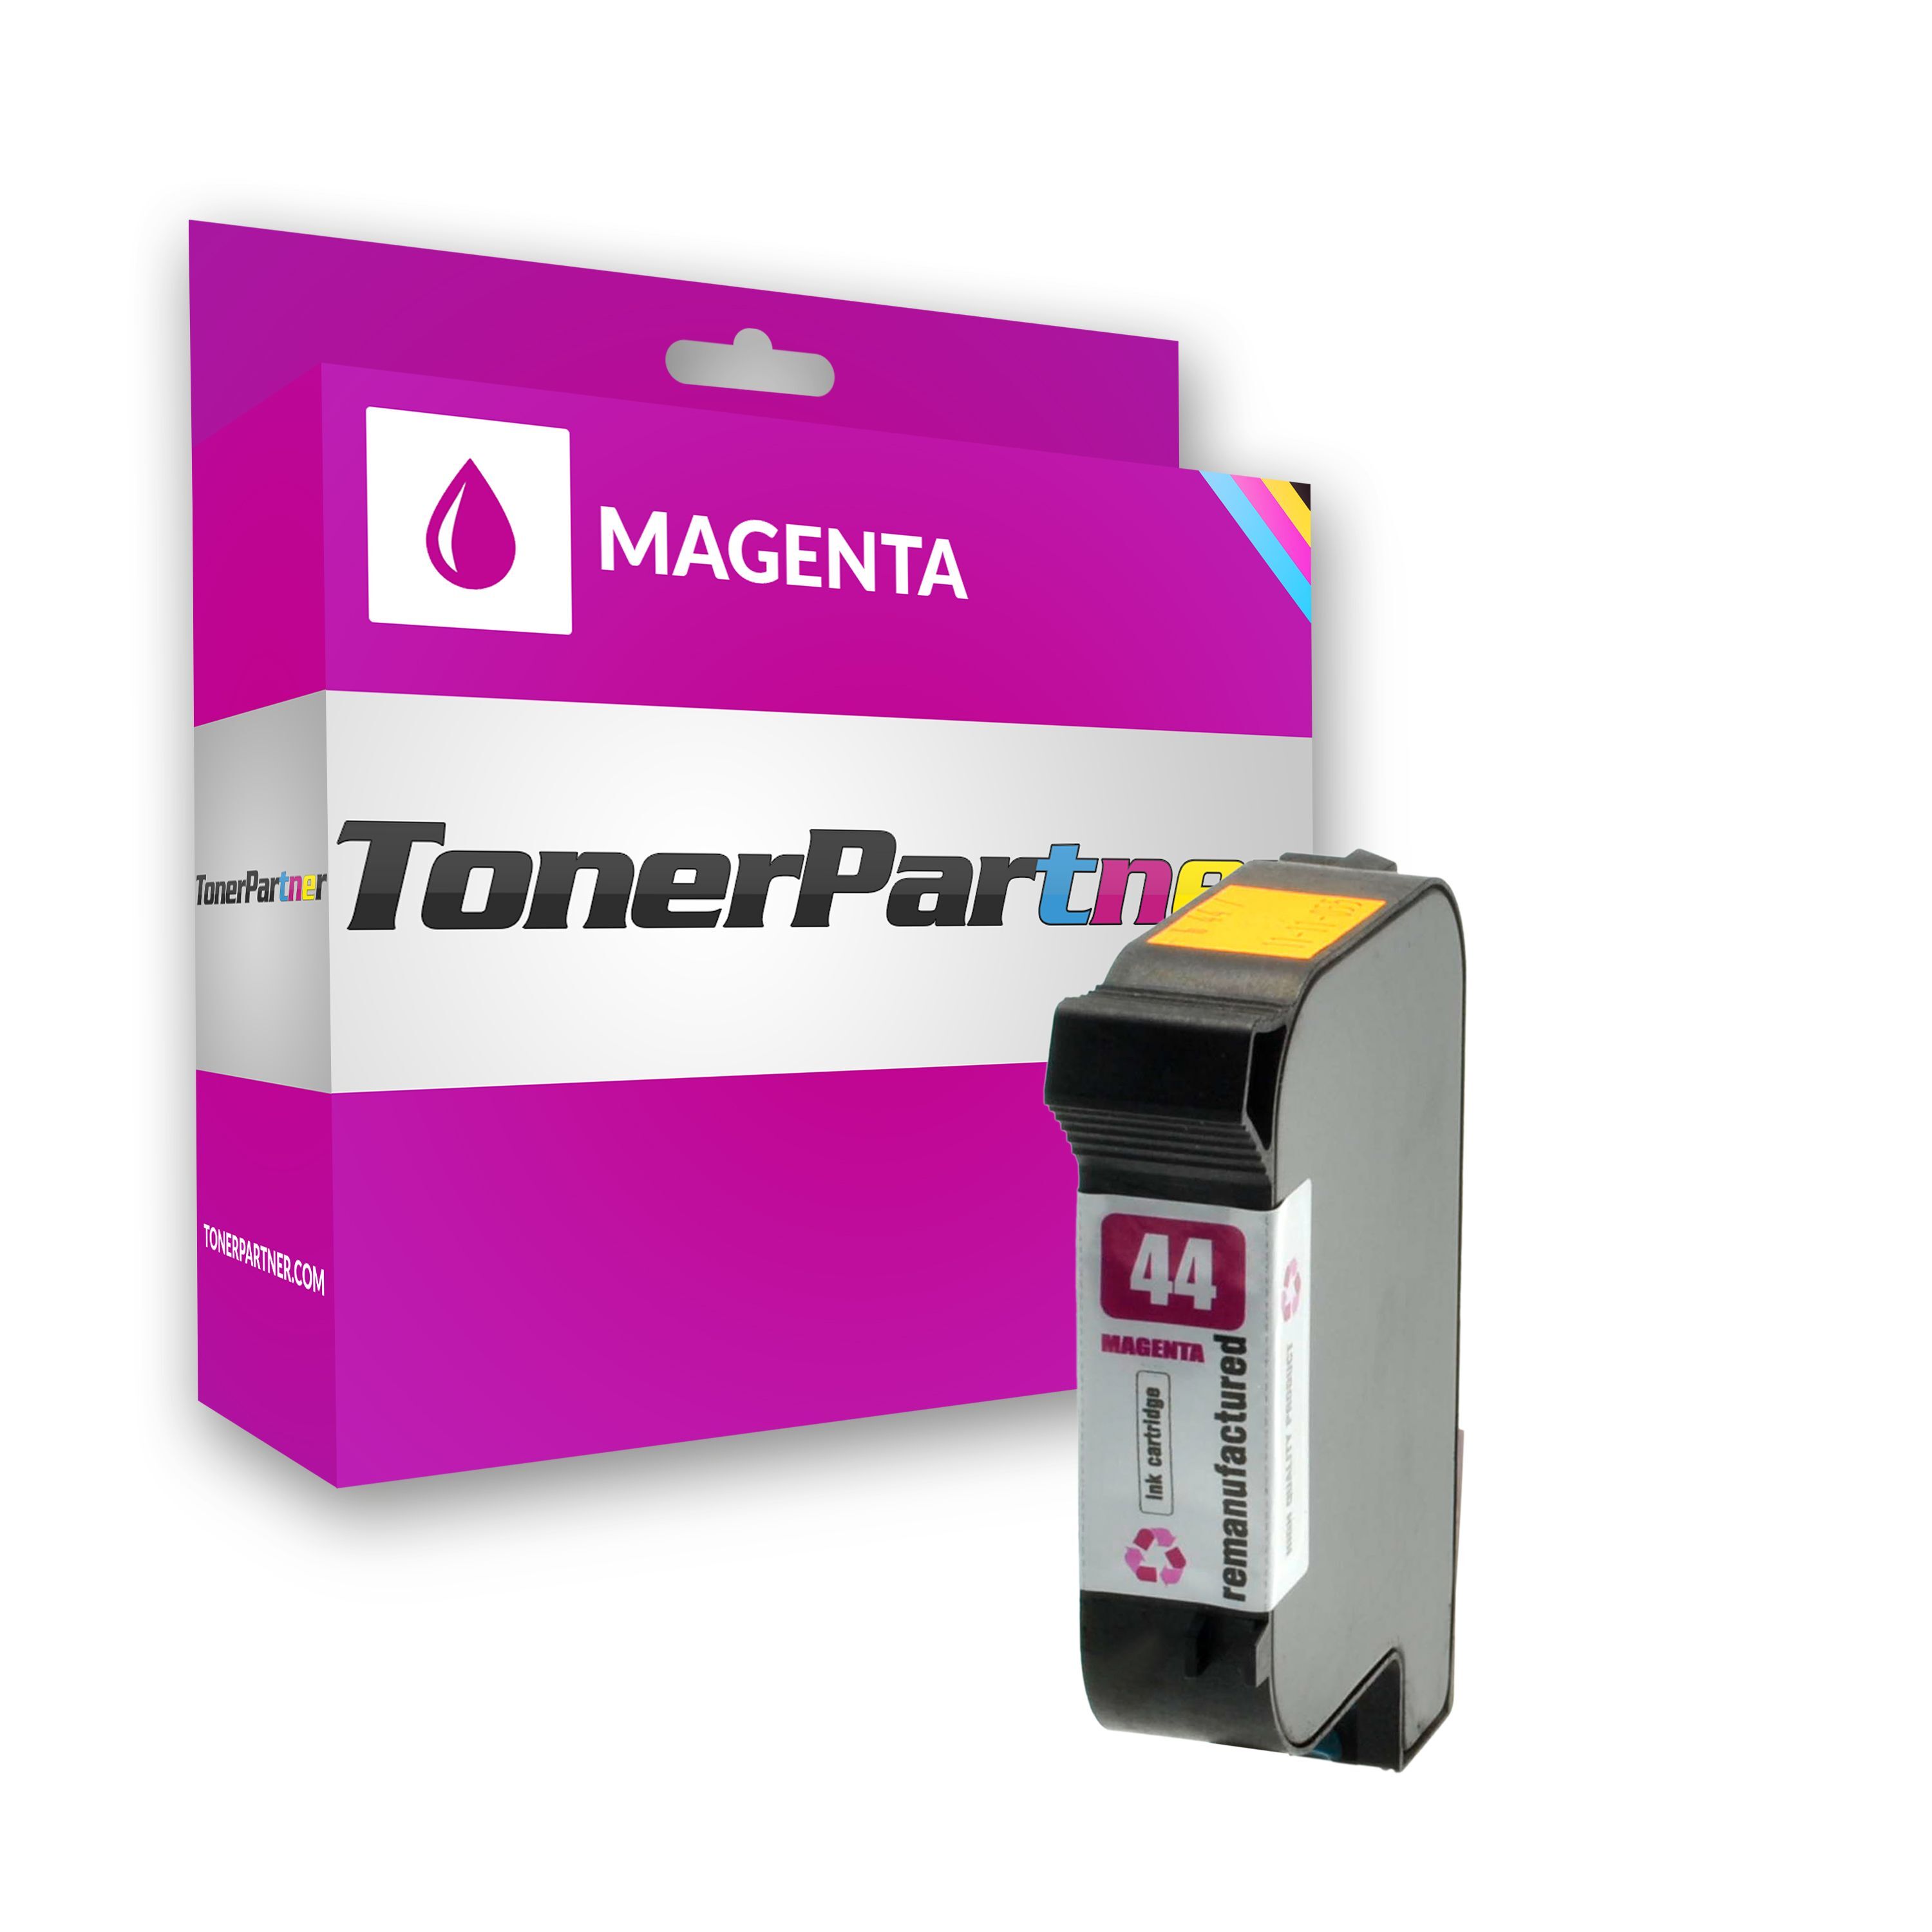 TonerPartner Kompatibel zu HP DesignJet 488 CA 36 Inch Tintenpatrone (44 / 51644 ME) magenta, 1.600 Seiten, 1,59 Rp pro Seite, Inhalt: 42 ml von TonerPartner